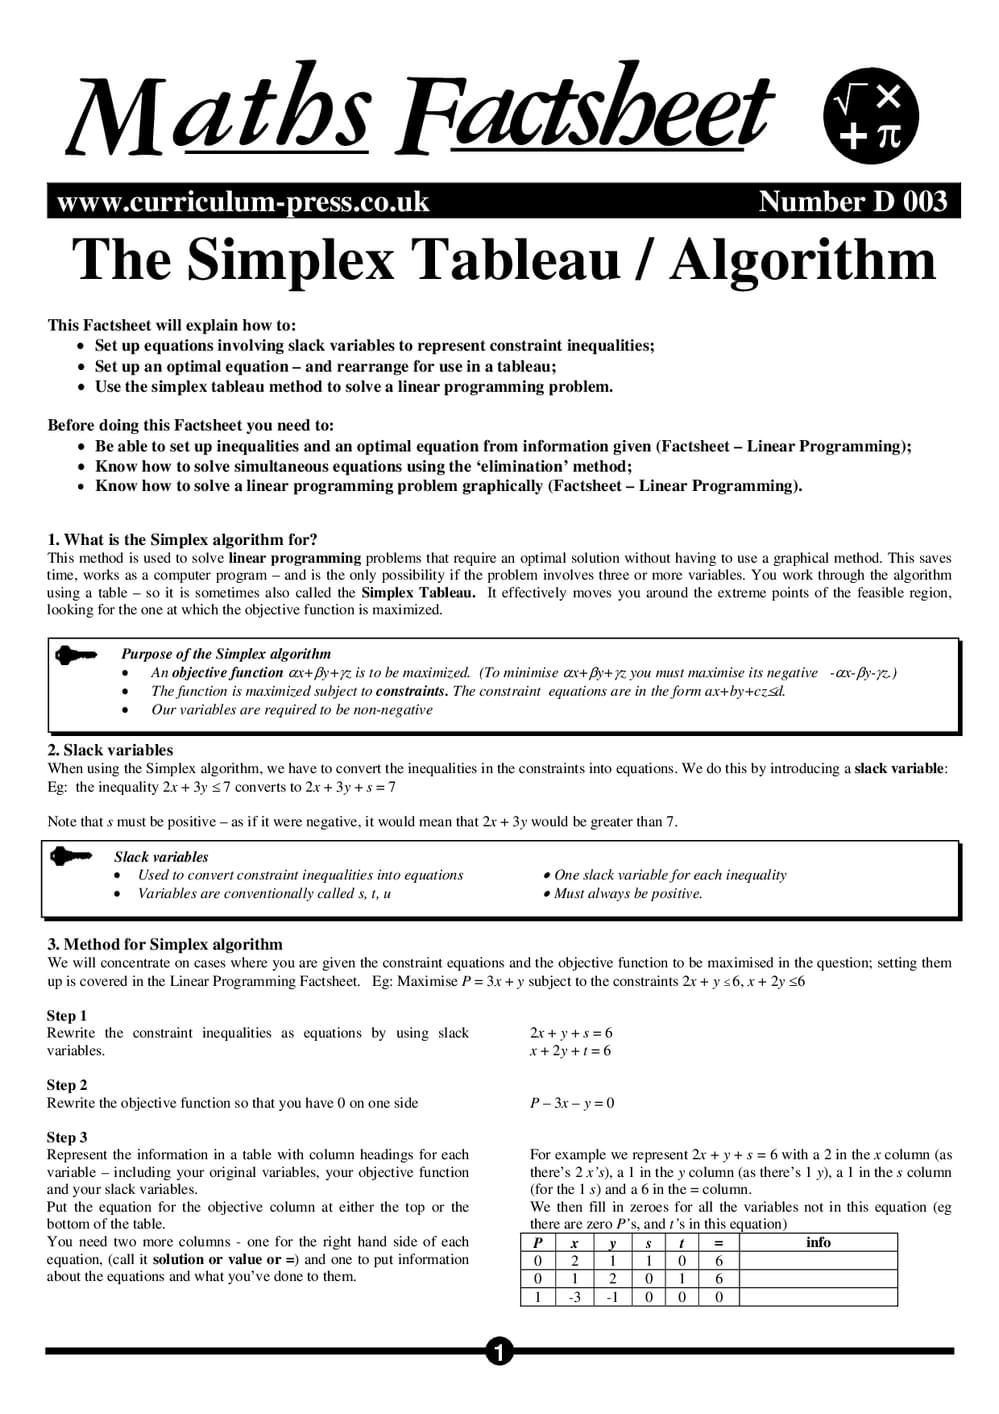 D03 The Simplex Tableau Algorithm